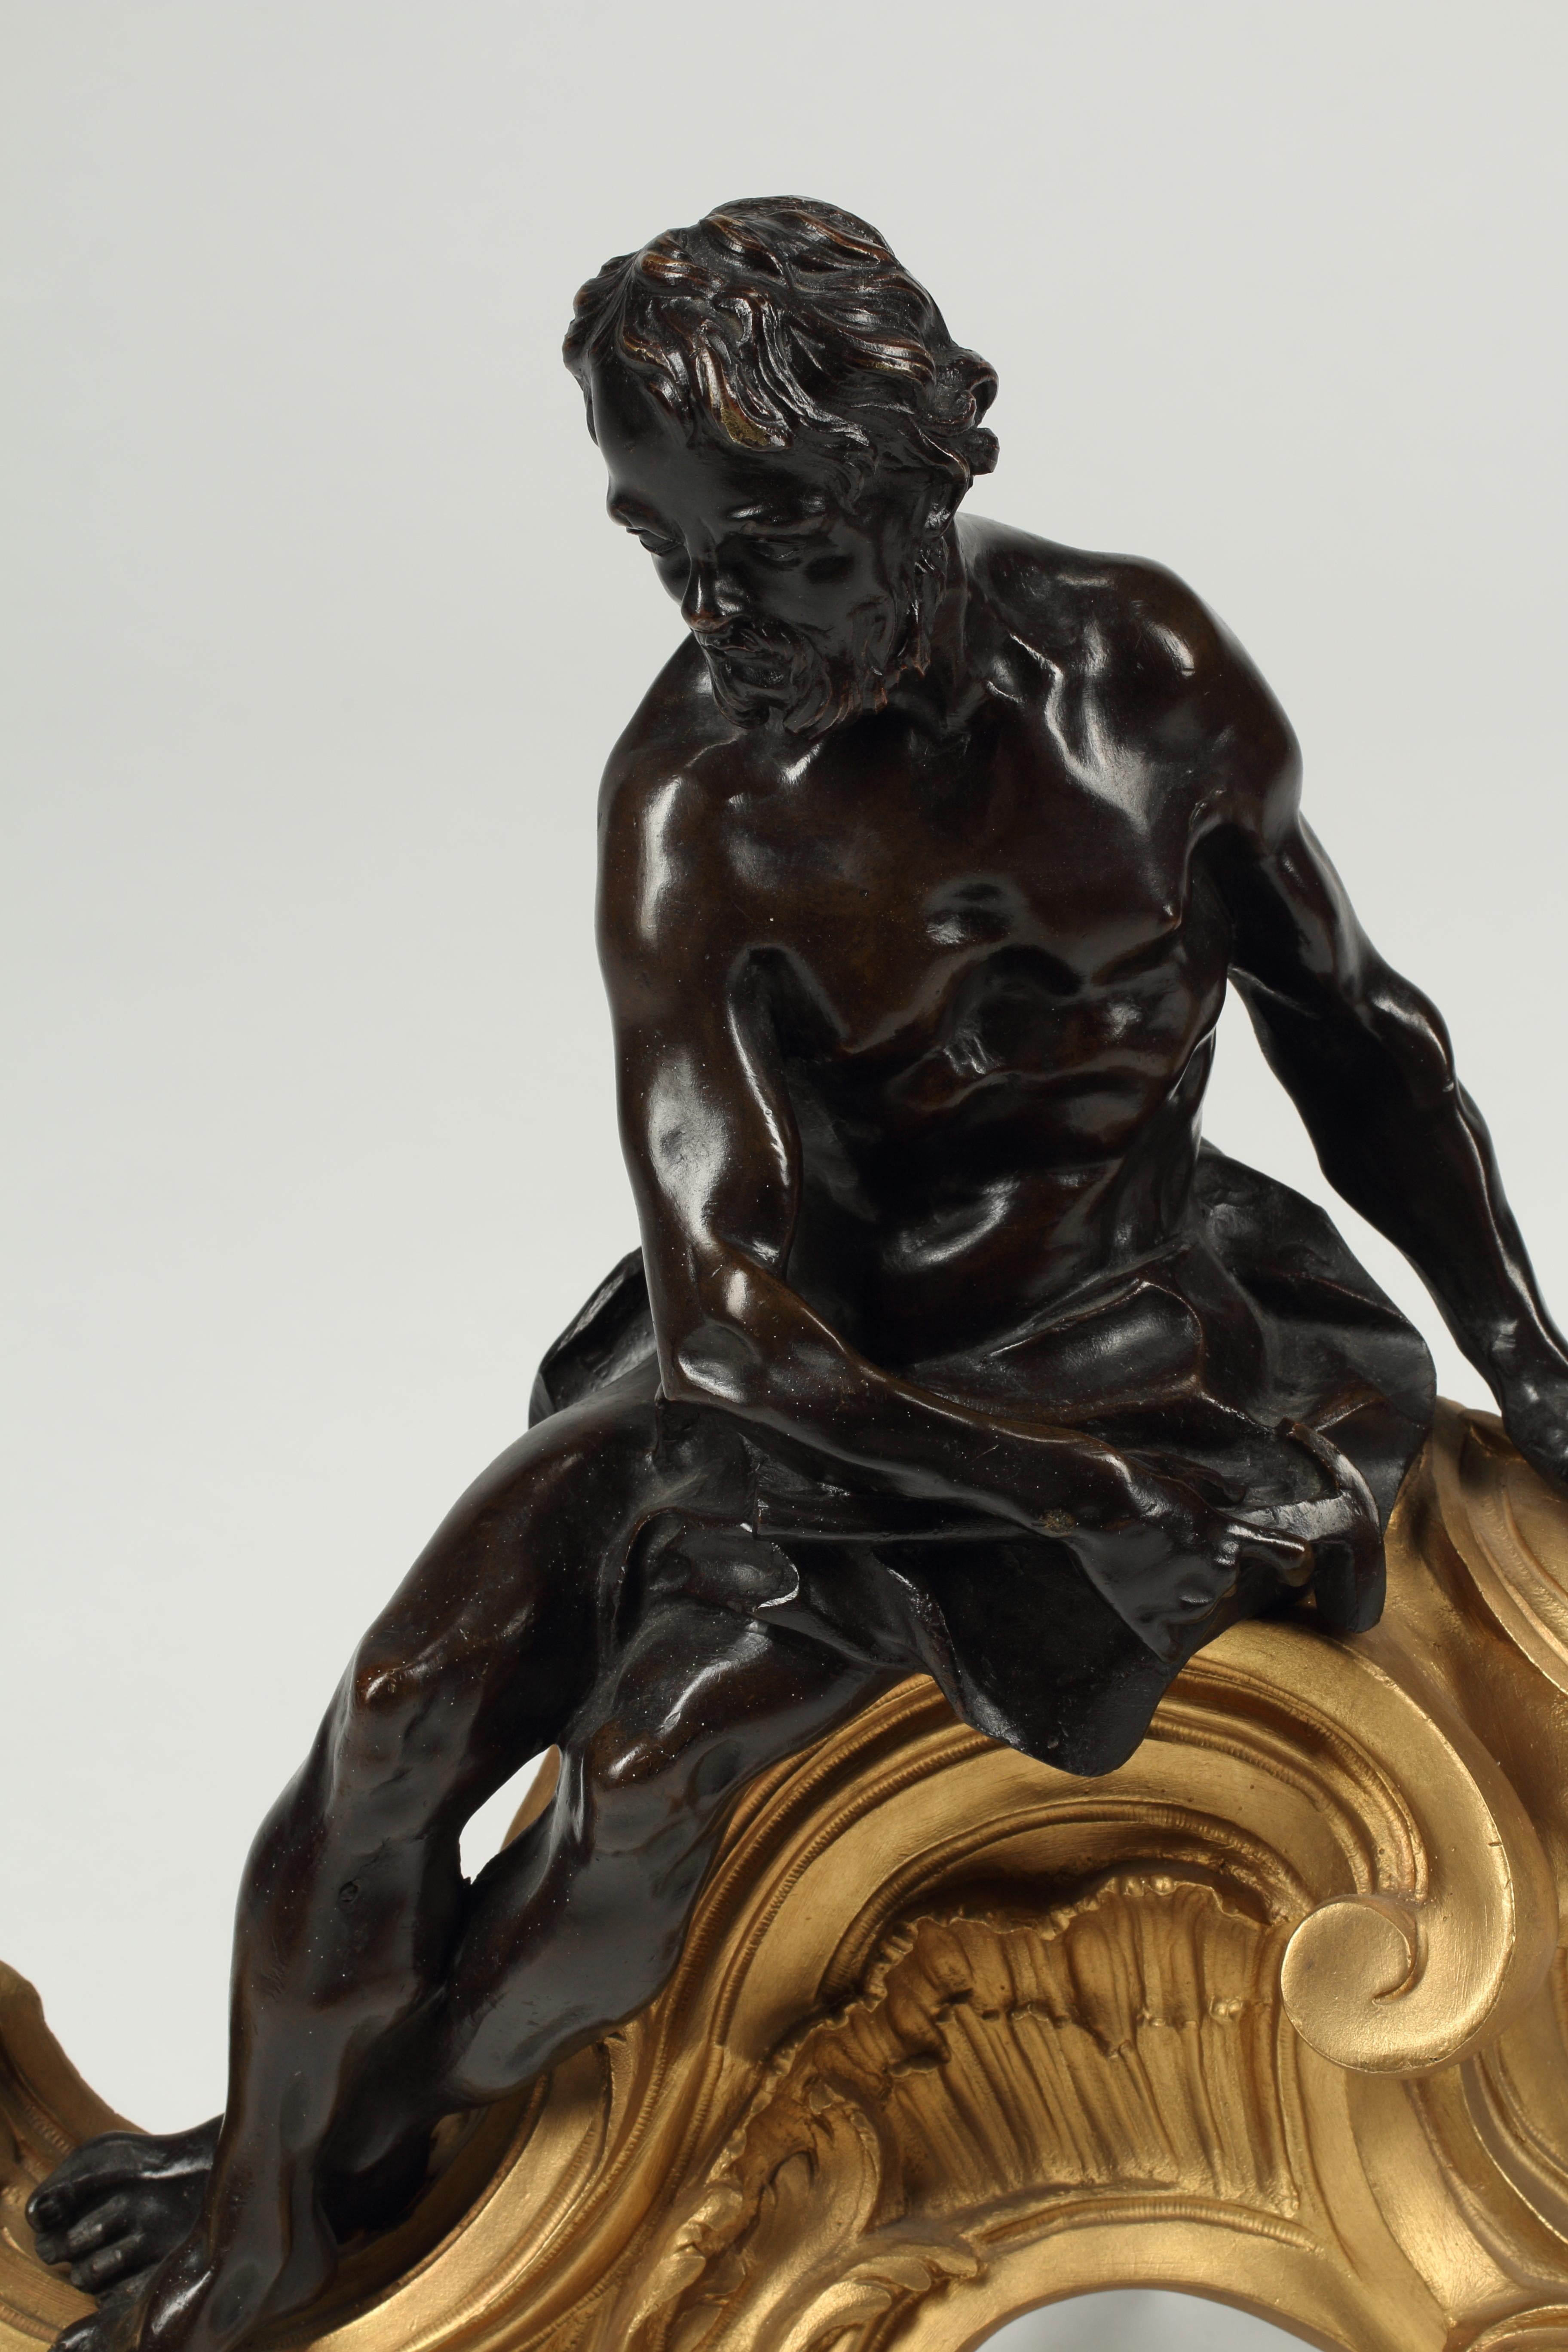 Paire de chenets en bronze patiné et doré de style Louis XV, opposés au XIXe siècle.
Une figure masculine et une figure féminine patinées en position allongée, surmontées de belles volutes en bronze doré. 